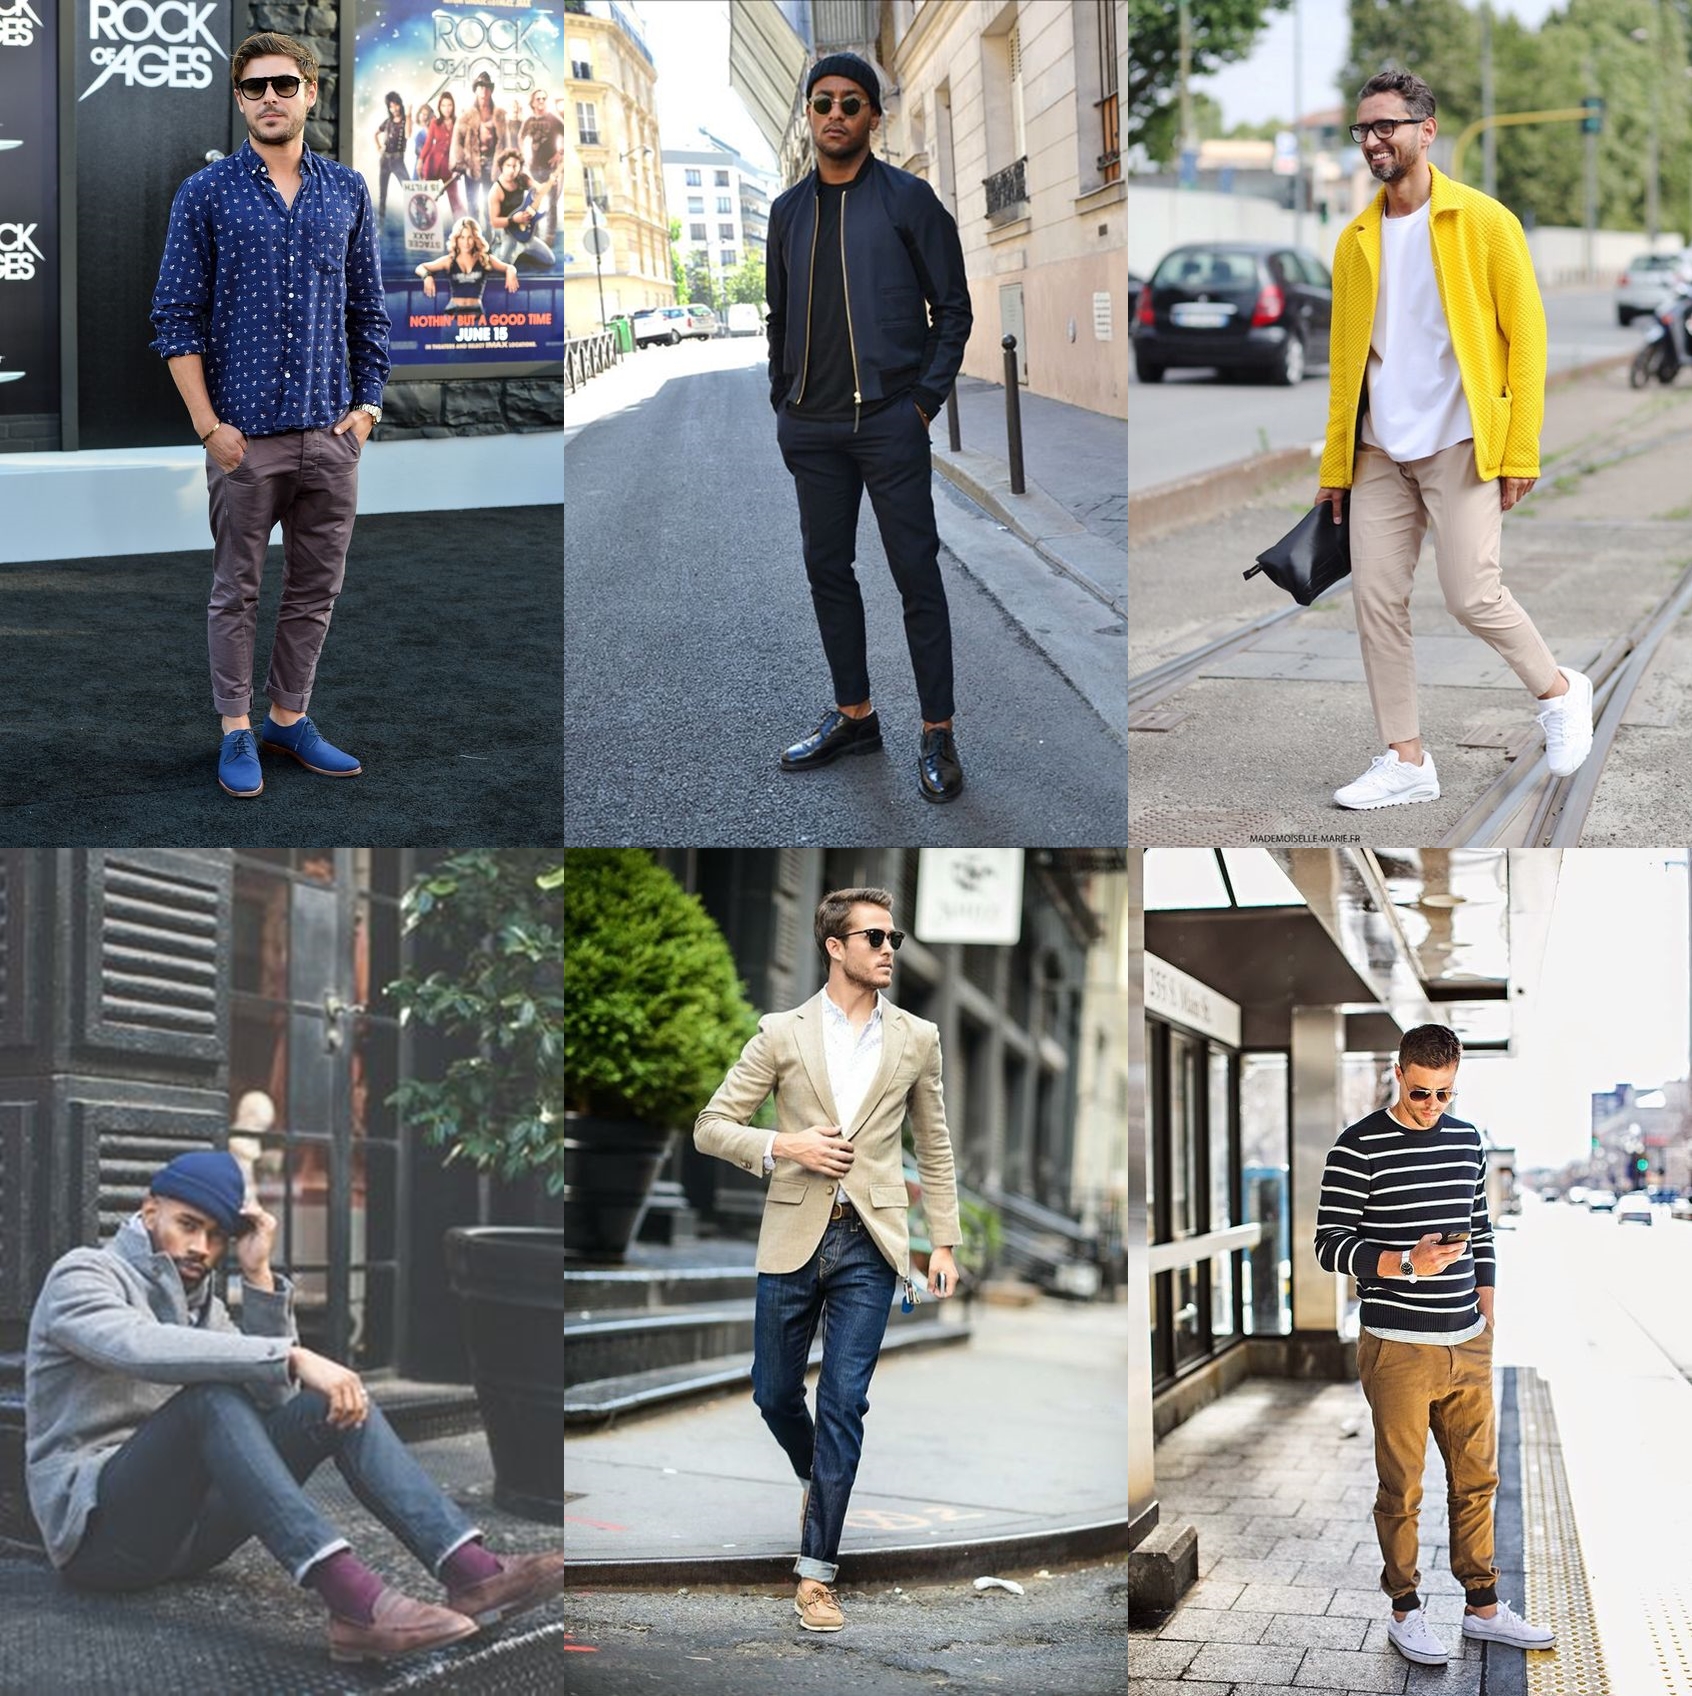 barra dobrada, calça curta, calça jogger, alfaiataria, moda masculina, alex cursino, moda sem censura, blog de moda masculina, fashion blogger, blog, 5